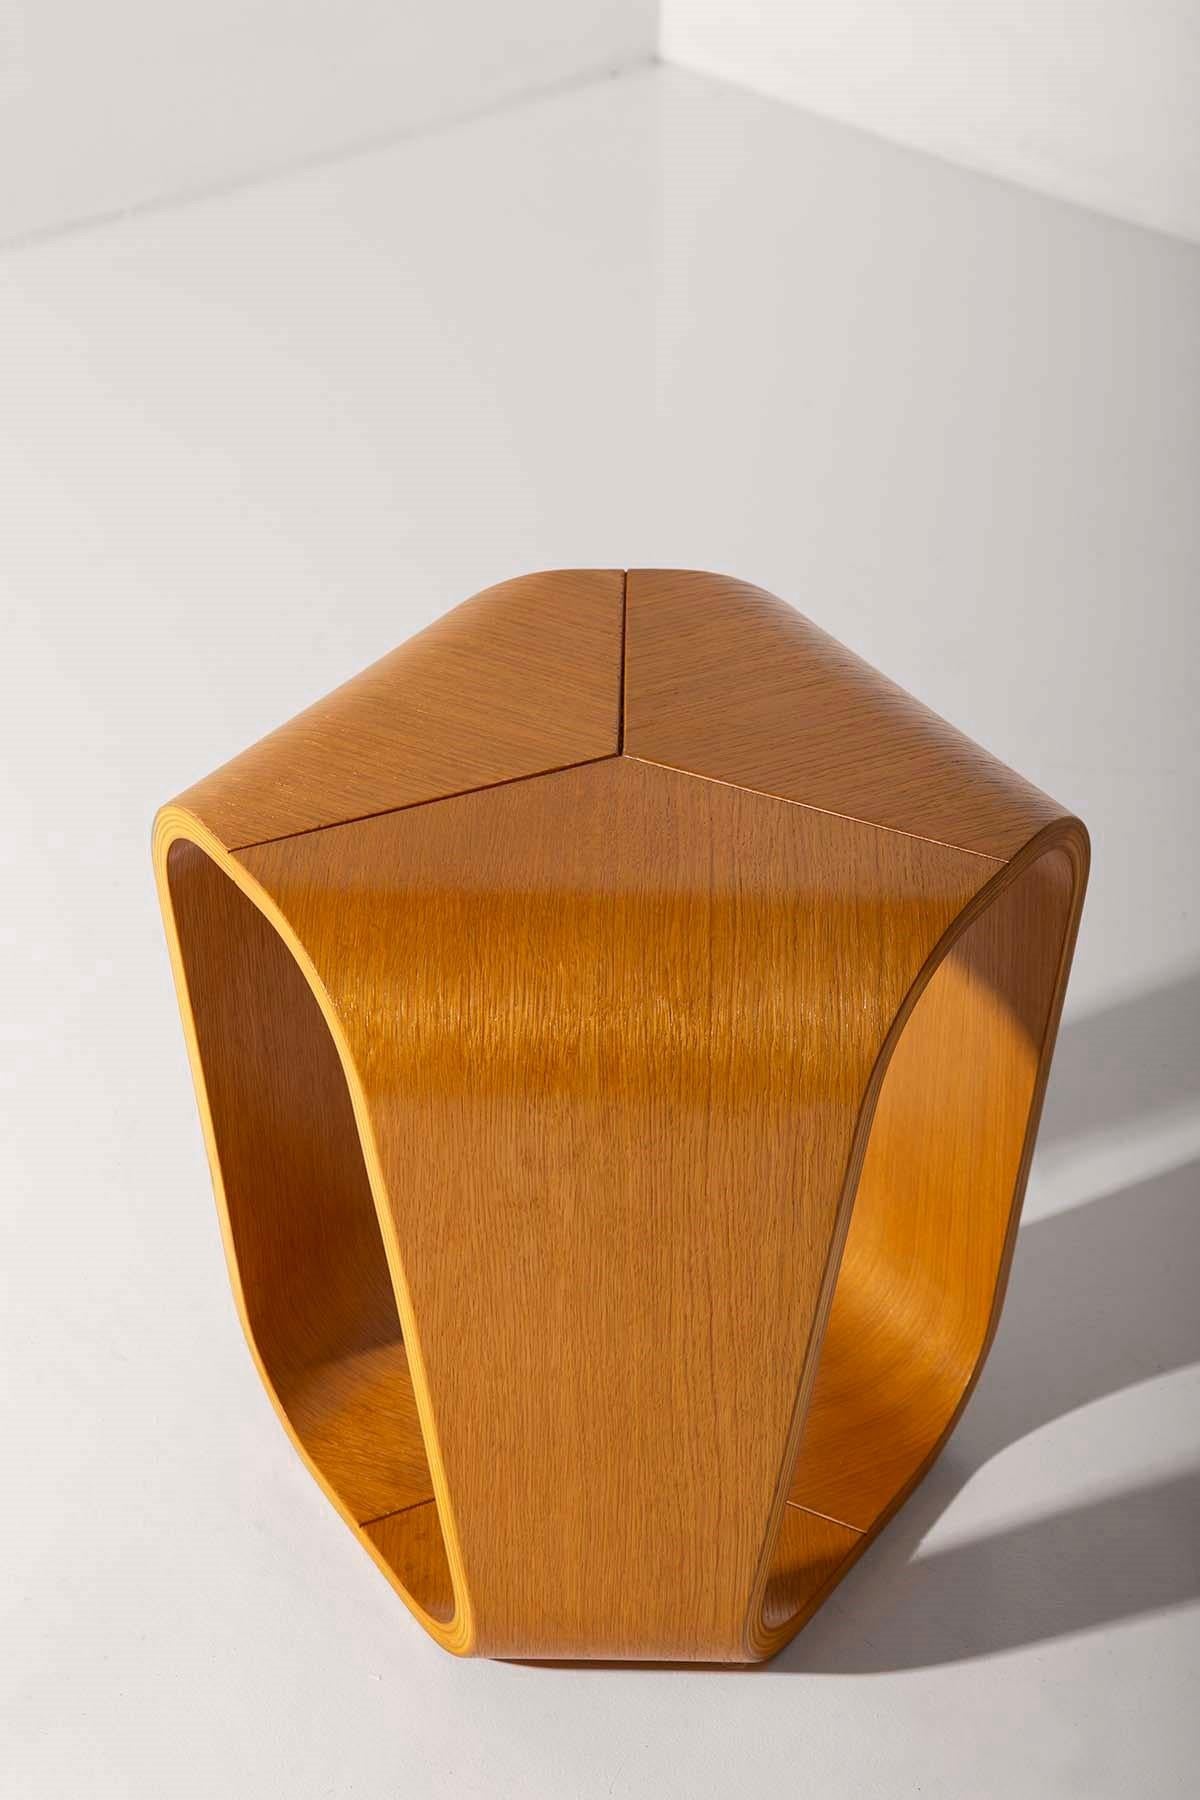 Table basse Infinity conçue par Enrico Cesana pour Busnelli en contreplaqué de chêne courbé.
Le design de cette table basse rappelle le goût des années 1970 et fait écho au design de l'ère spatiale. 
Parfait pour tout espace de vie ou chambre à